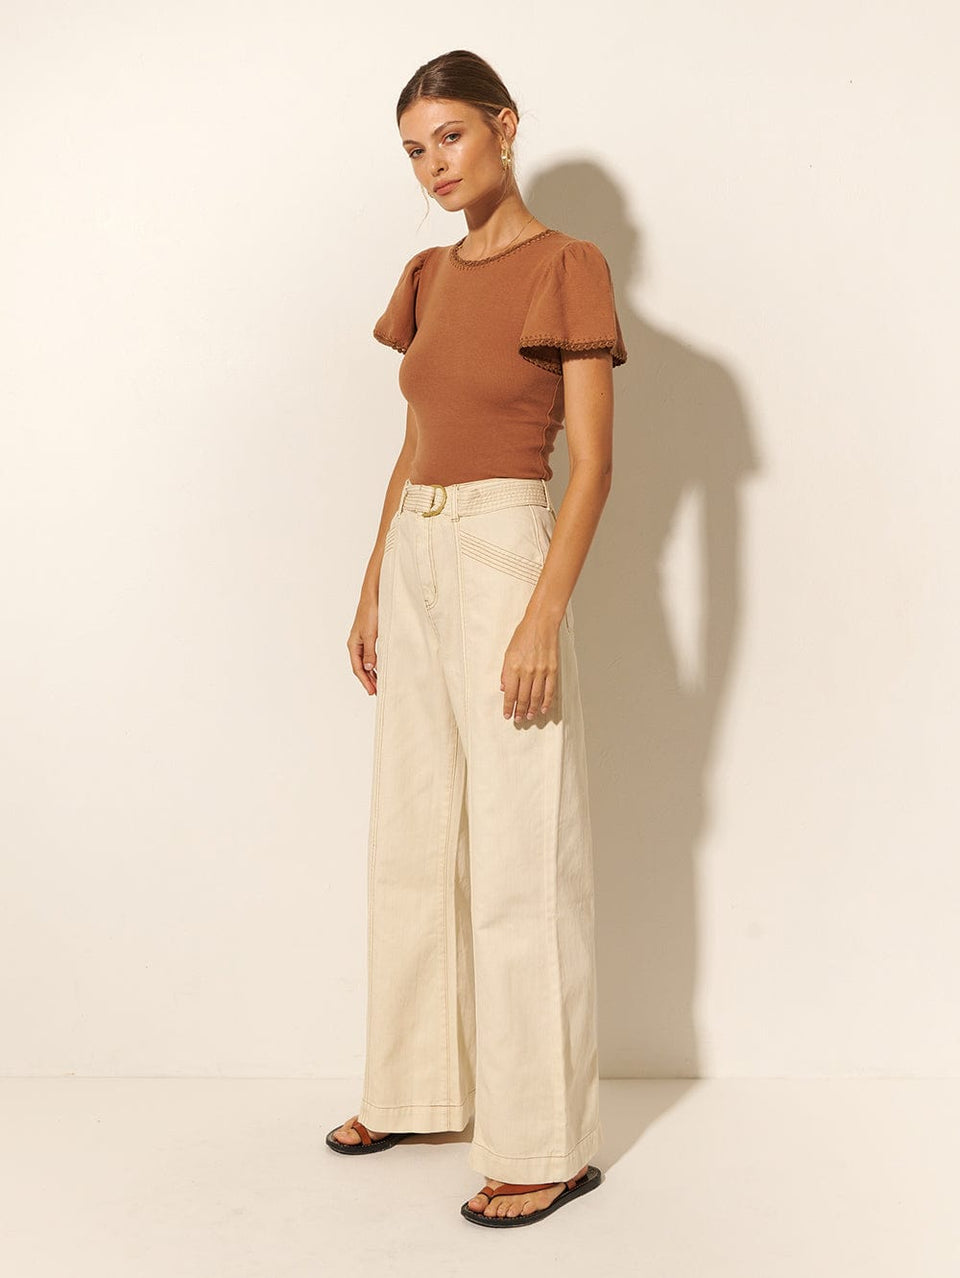 KIVARI Tallulah Tee | Model wears Brown Tee Side View